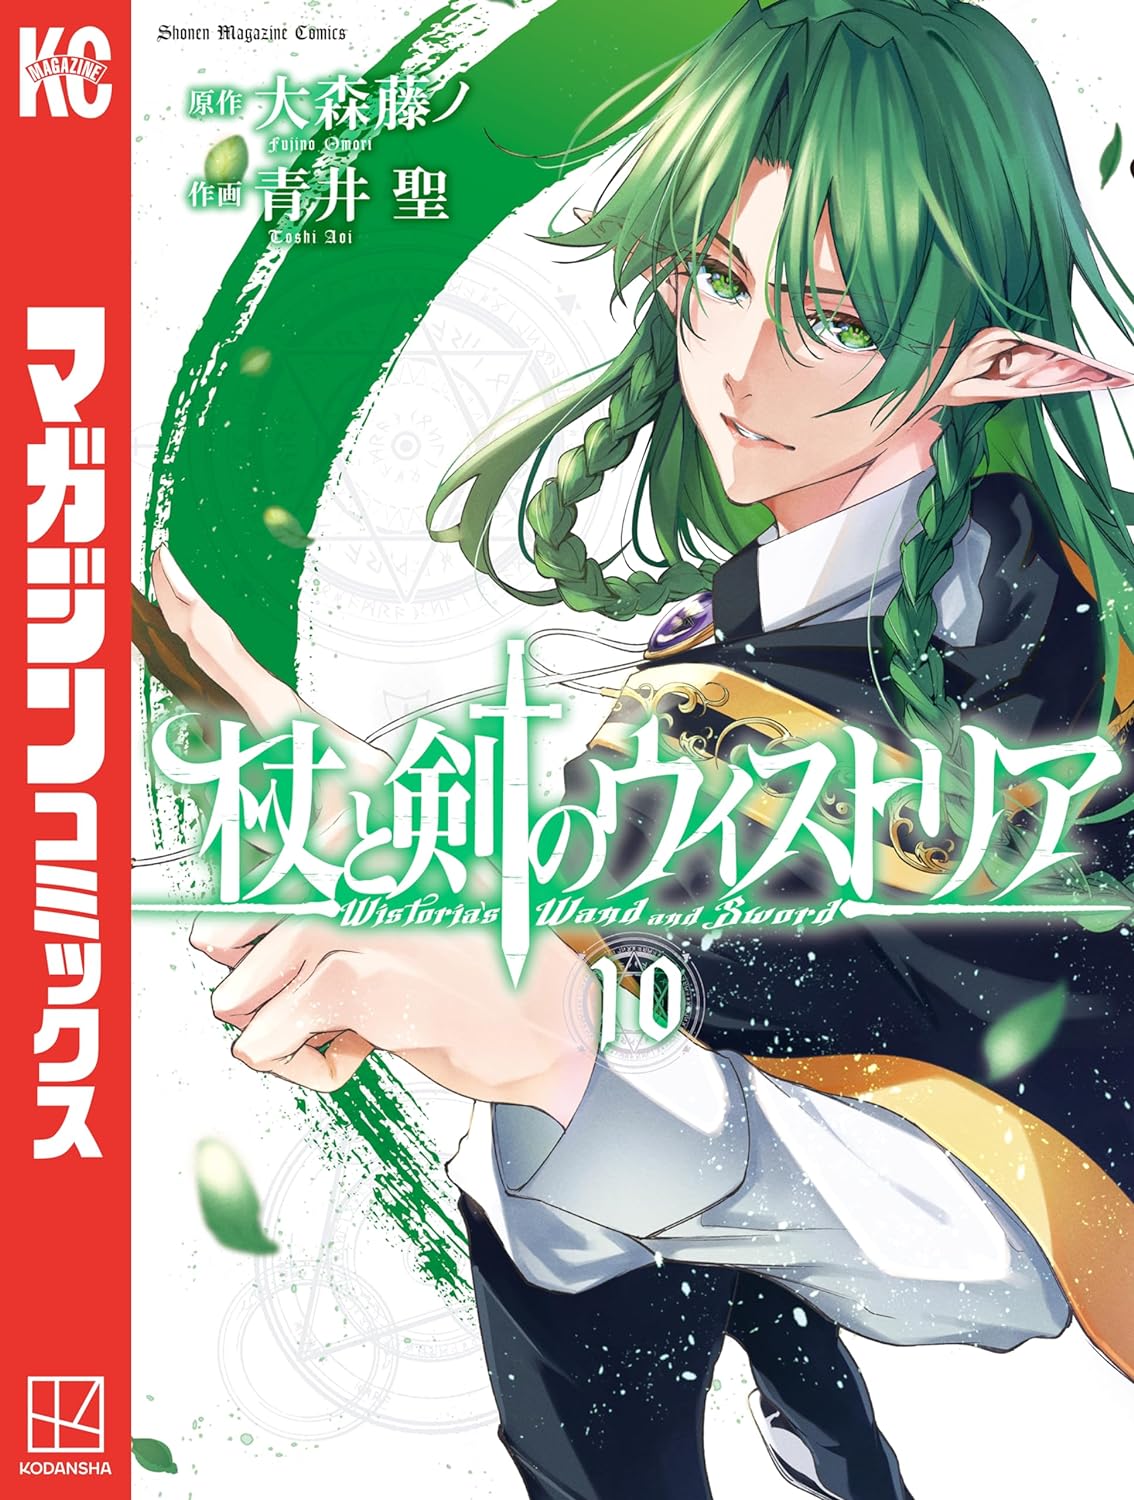 Tsue to Tsurugi no Wistoria Manga Cover Volume 10